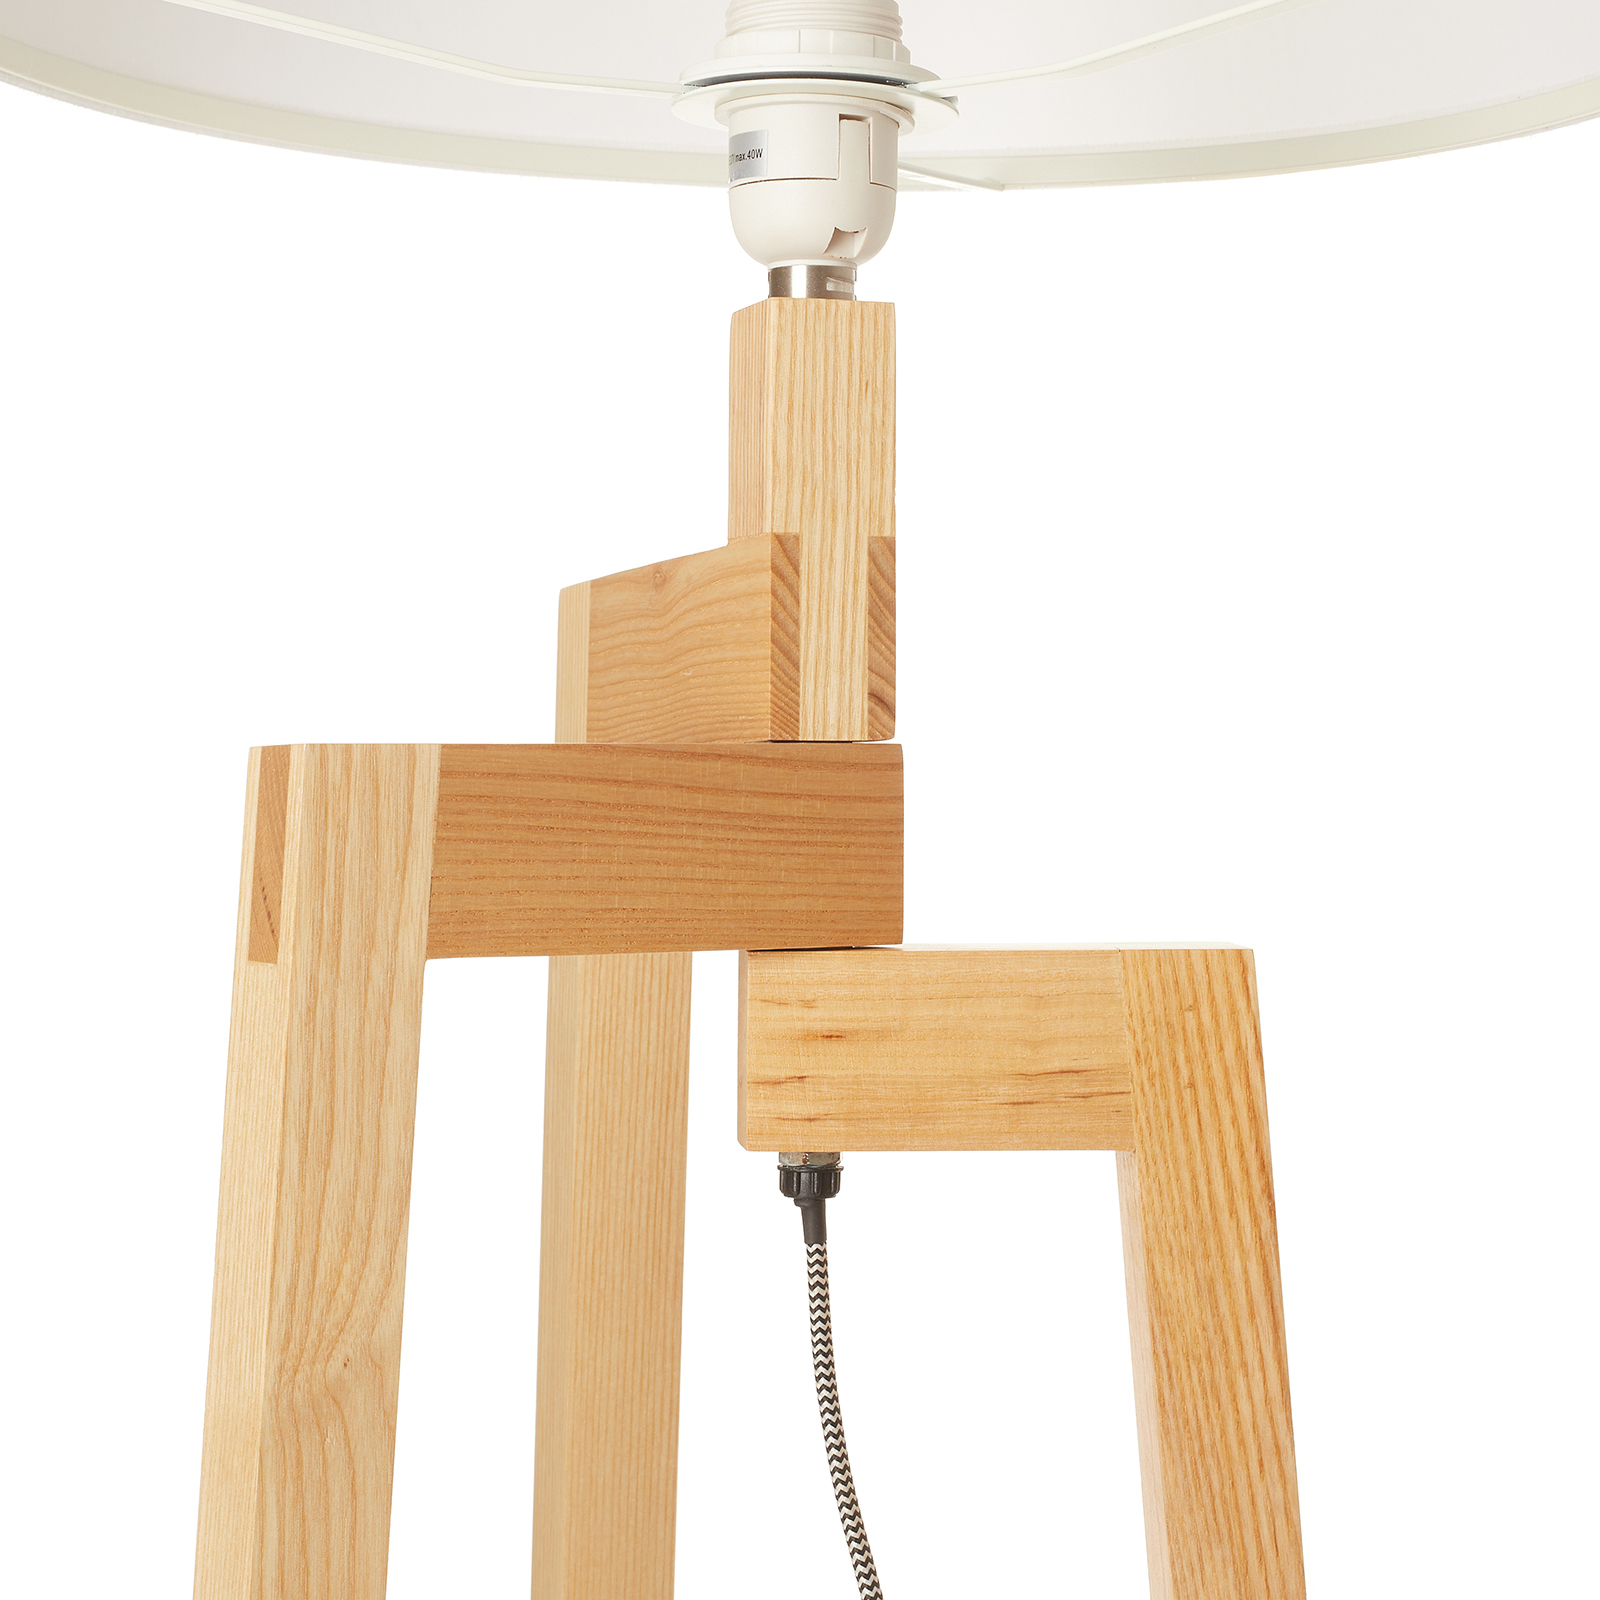 Trojnohá stojacia lampa Montana s látkovým tienidlom